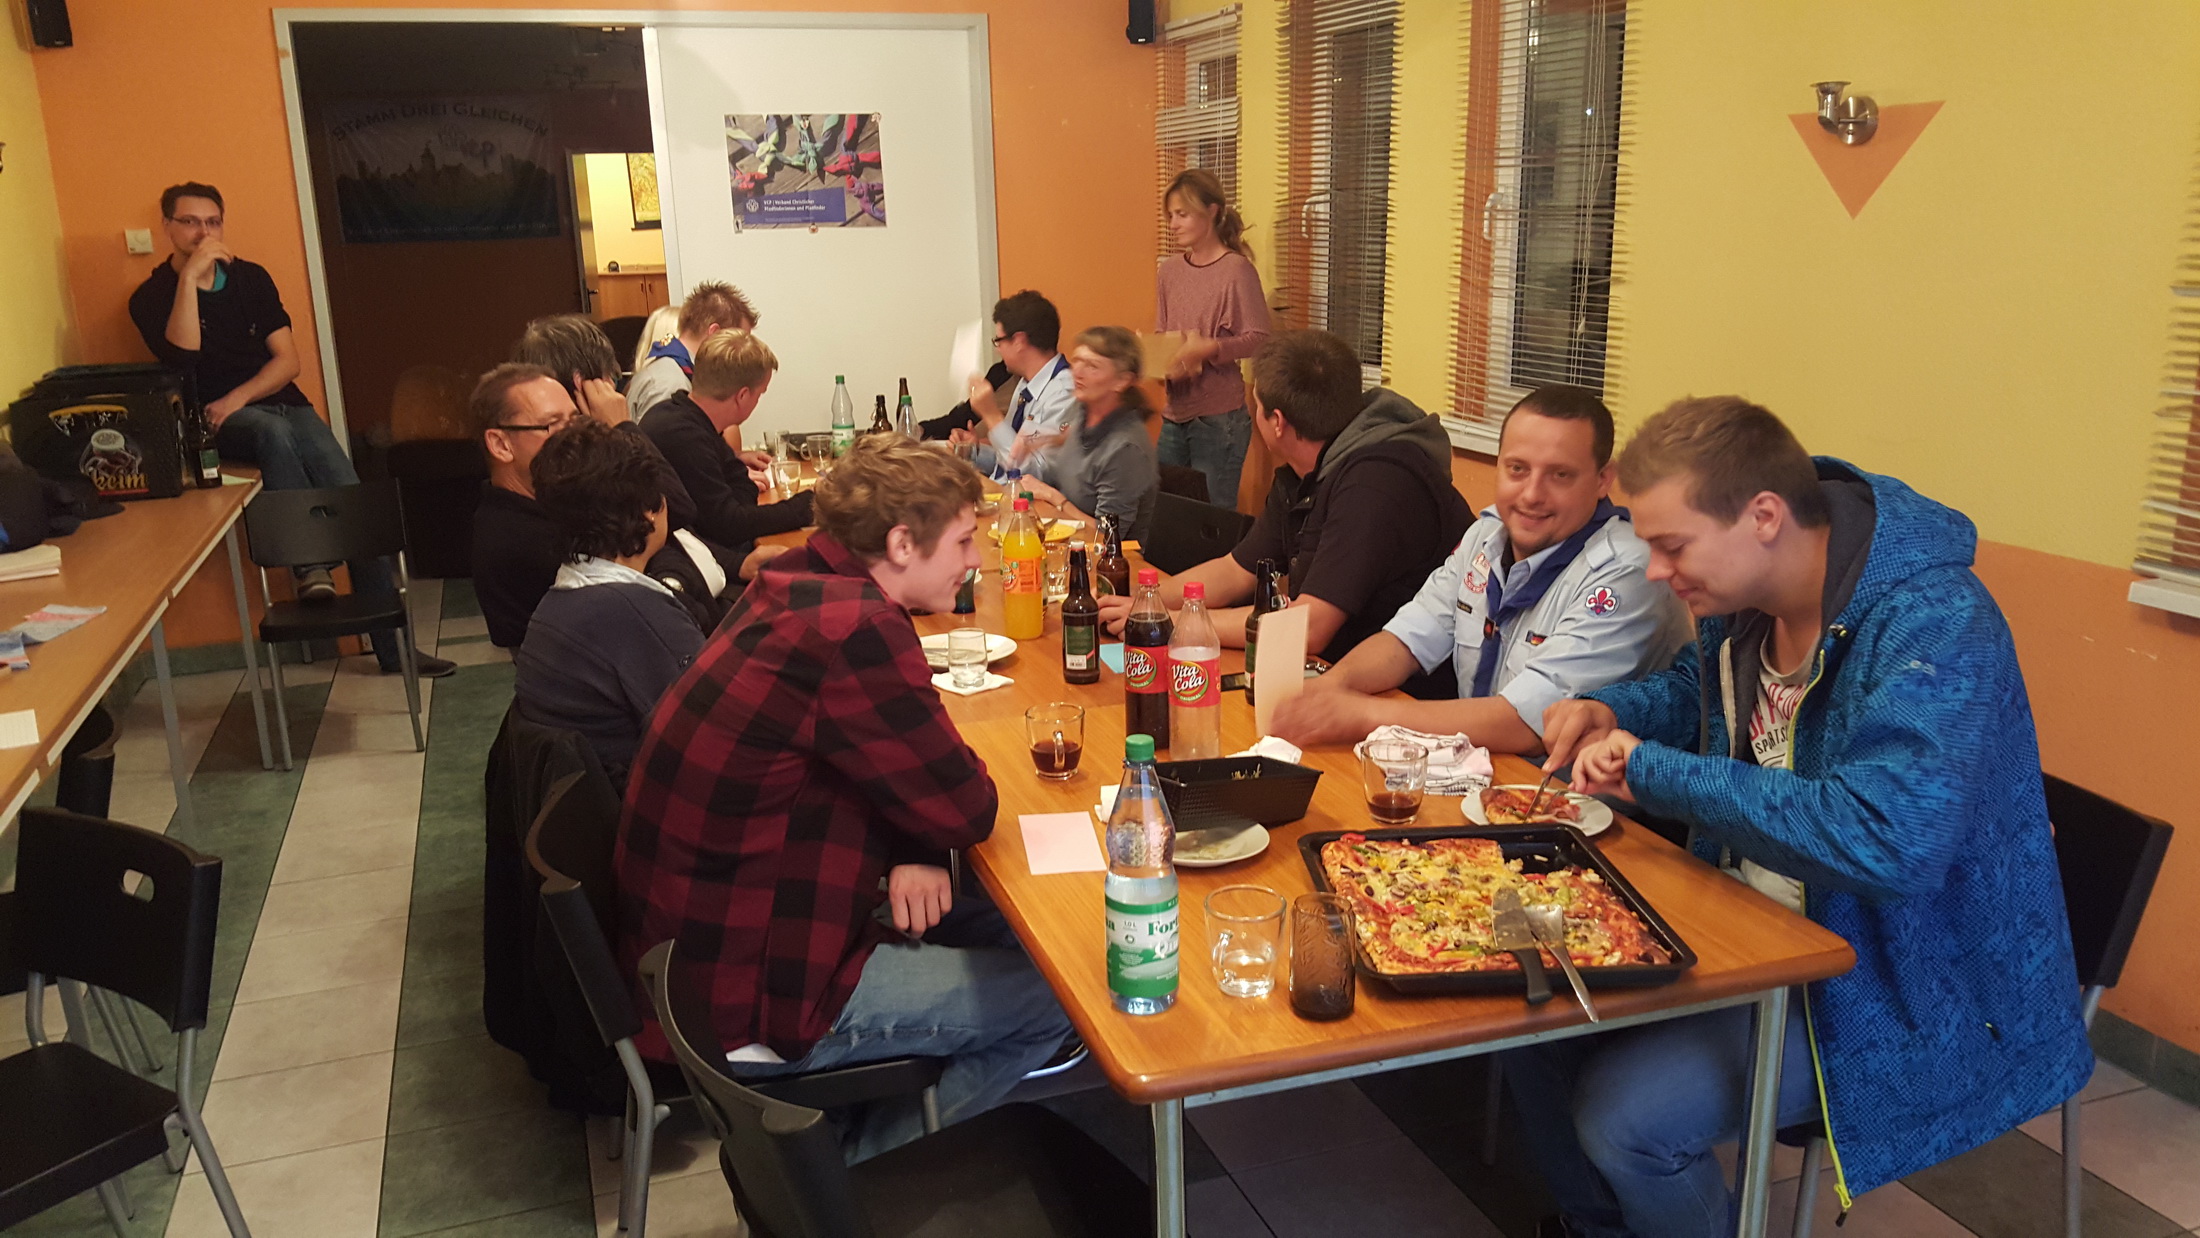 Selbst zubereitetet Pizza aus dem Lehmbackofen: Mitgliederversammlung der VDAPG e.V. Gilde Drei Gleichen